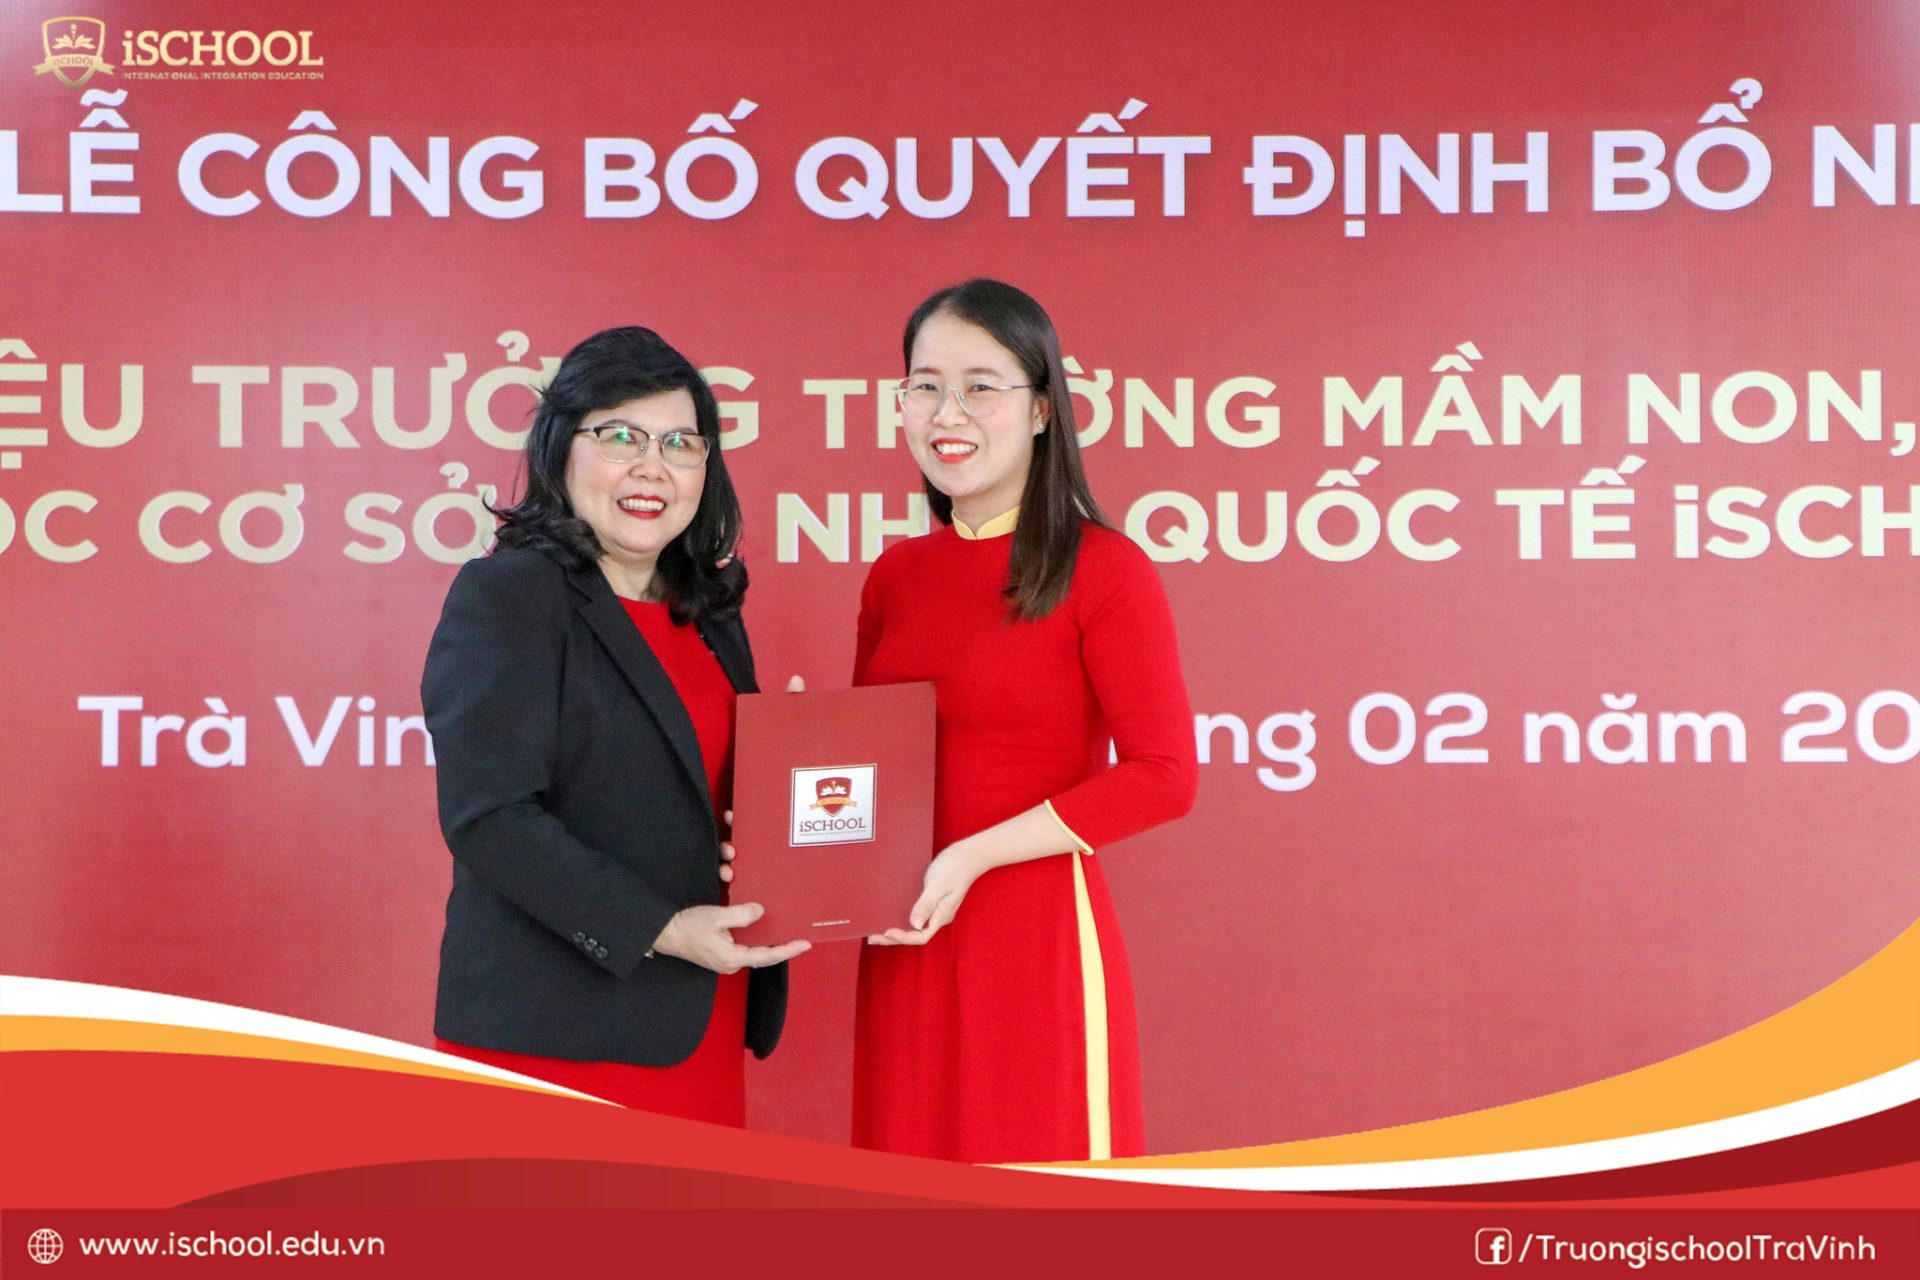 ThS Trịnh Phương Trinh - Phó trưởng phòng hành chính nhân sự Công ty iSchool trao Quyết định bổ nhiệm